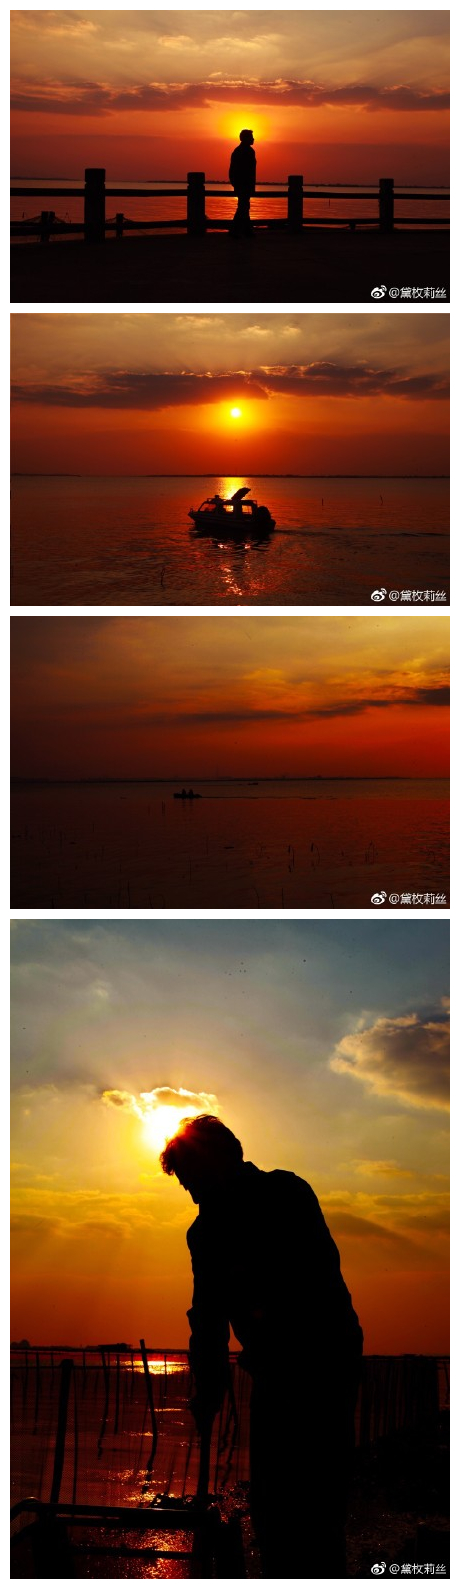 #寻味上海# 距离上海50公里的阳澄湖大闸蟹